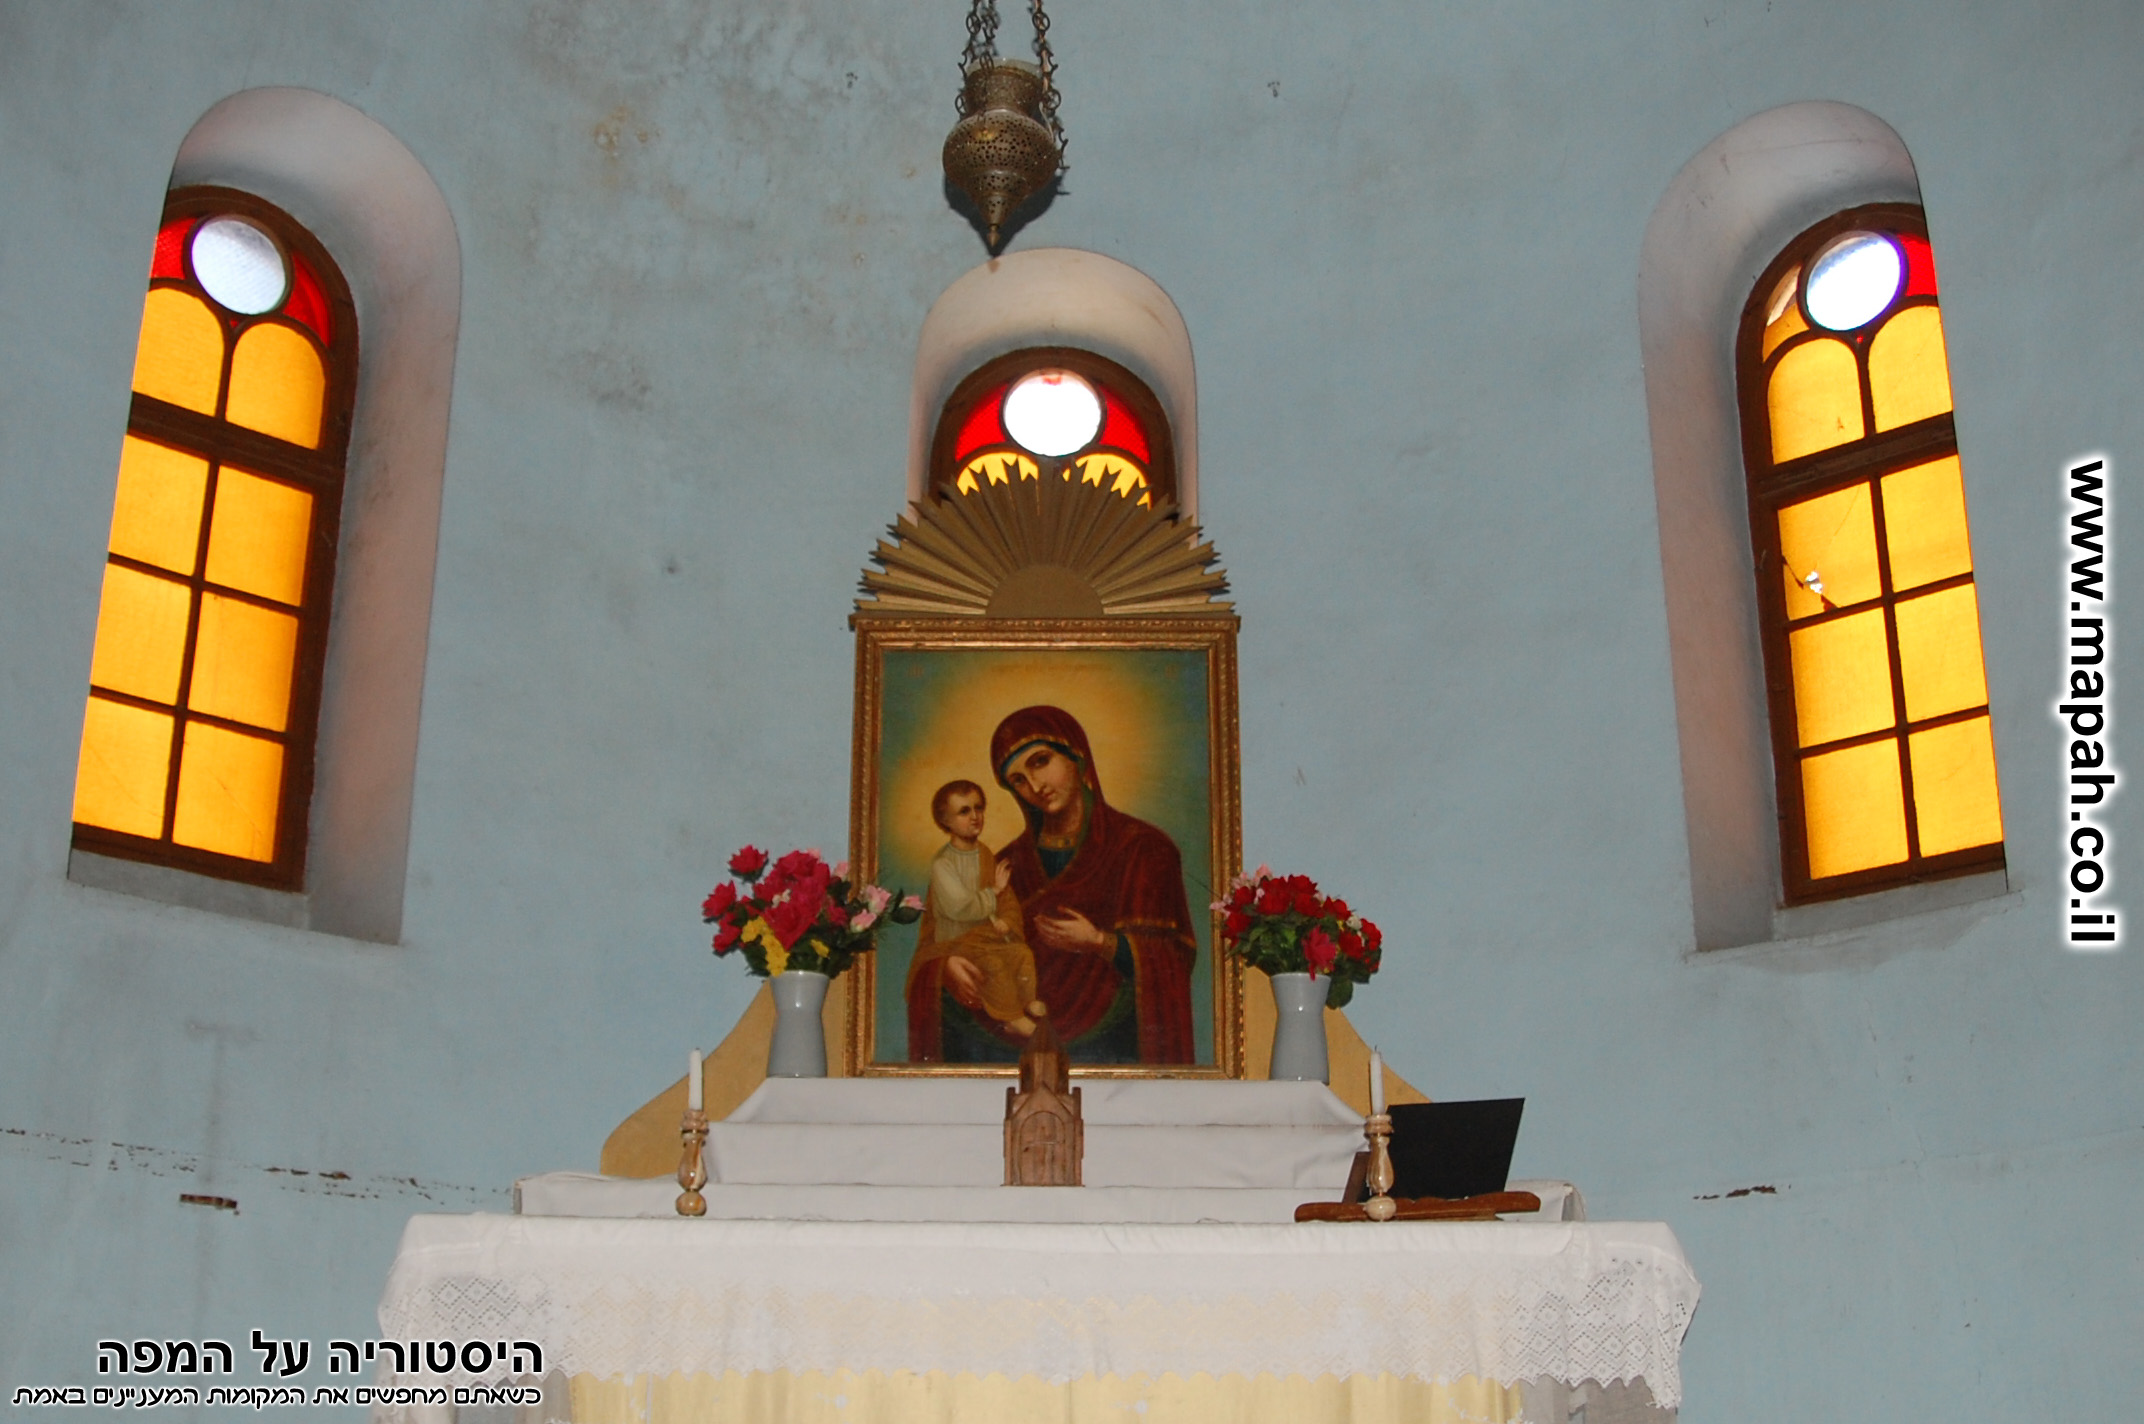 גומחת התפילה בית העם הטמפלרי - הכנסיה הארמנית - צילום: אפי אליאן